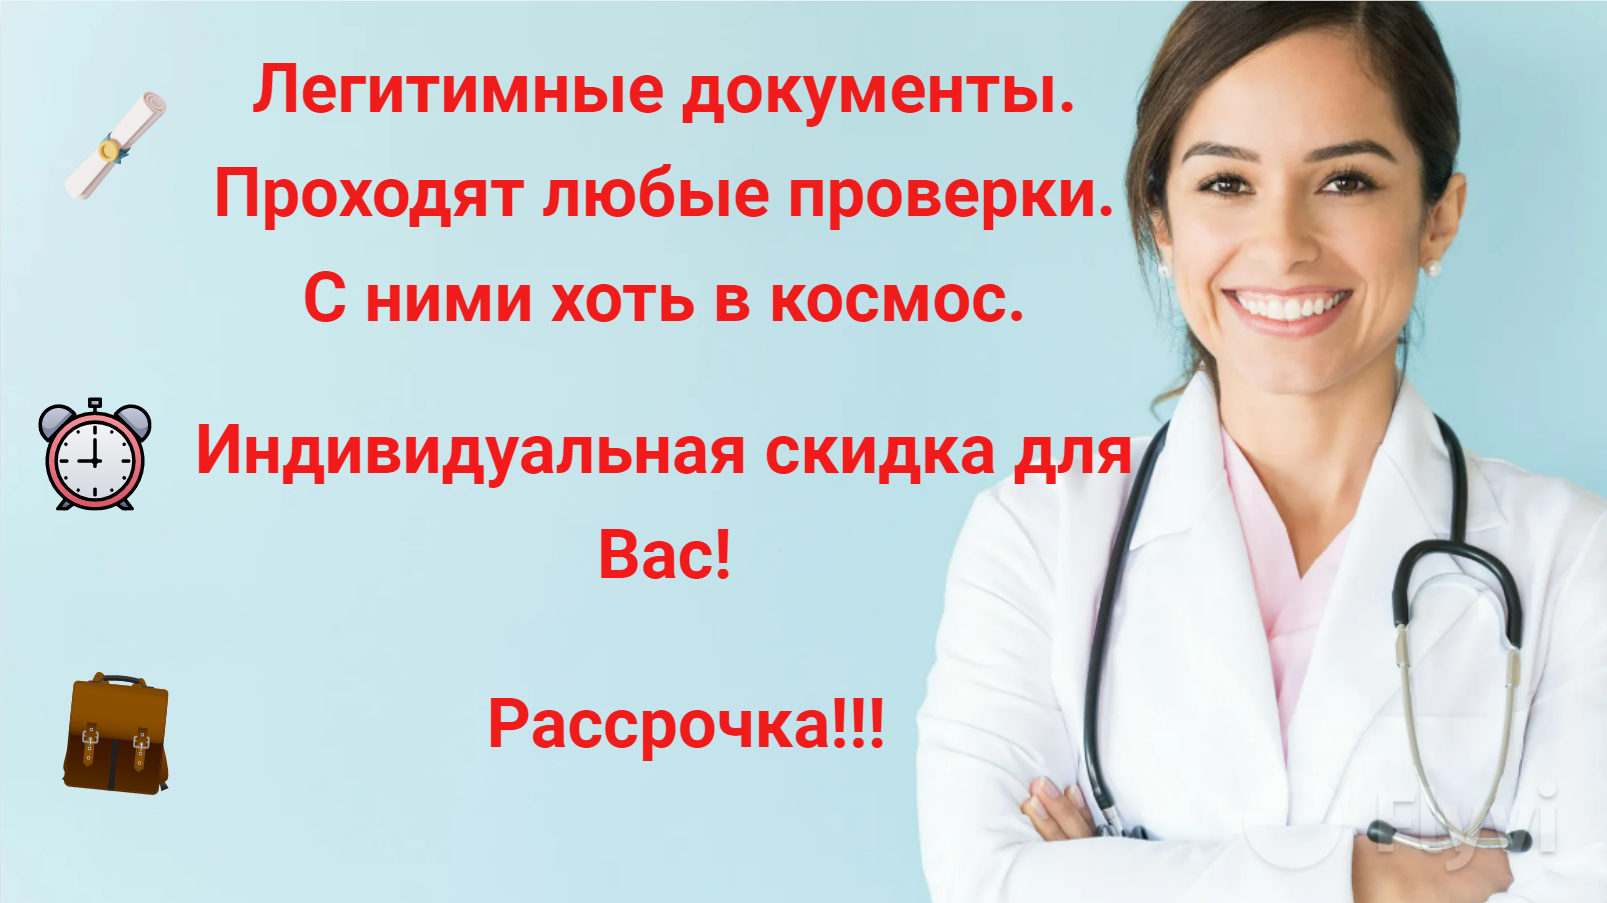 аккредитация средних медицинских работников